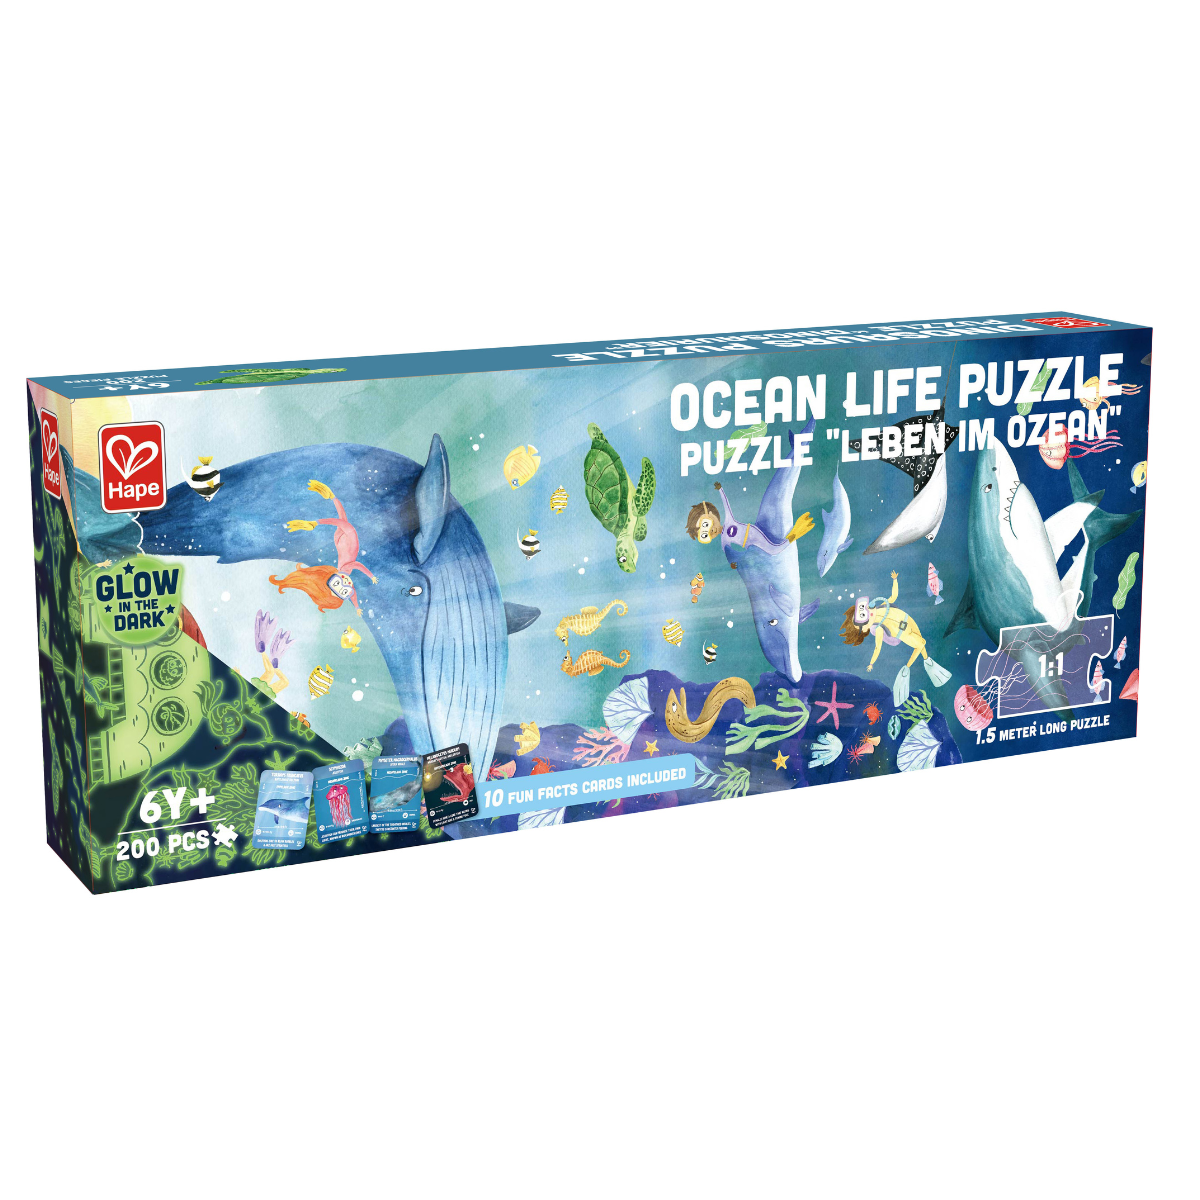 Ocean Life Puzzle 1.5